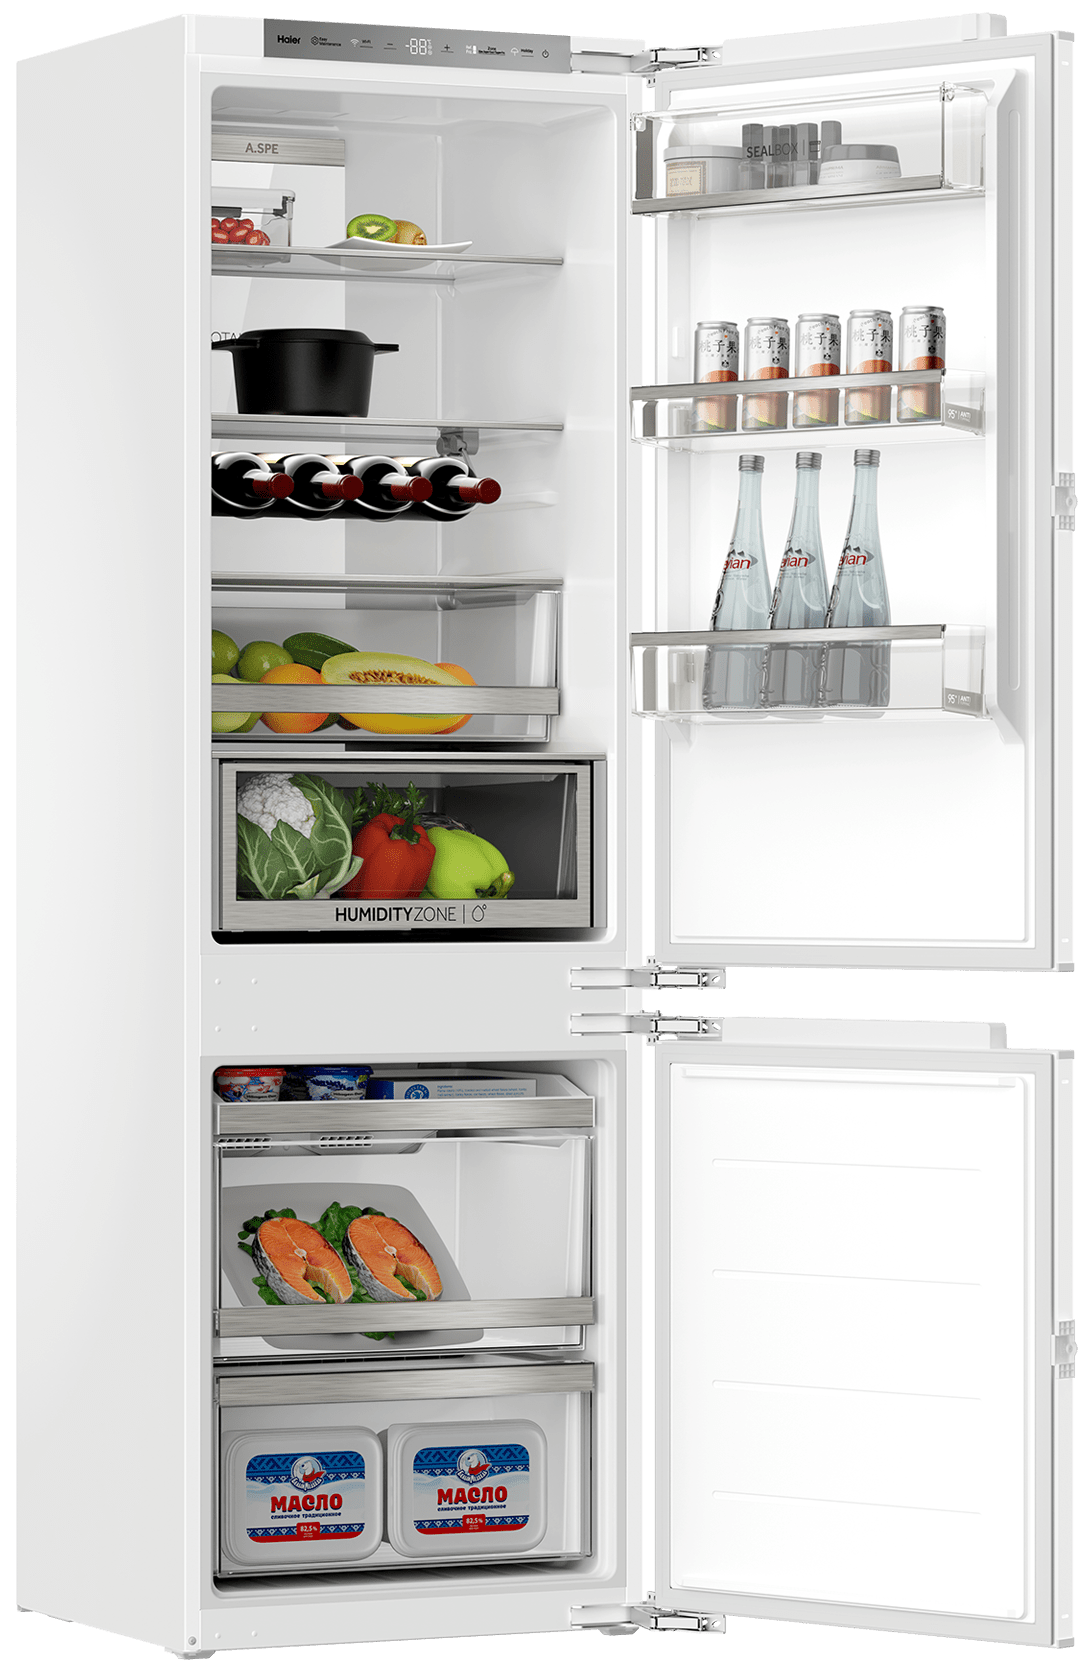 Встраиваемый холодильник Haier BCF5261WRU